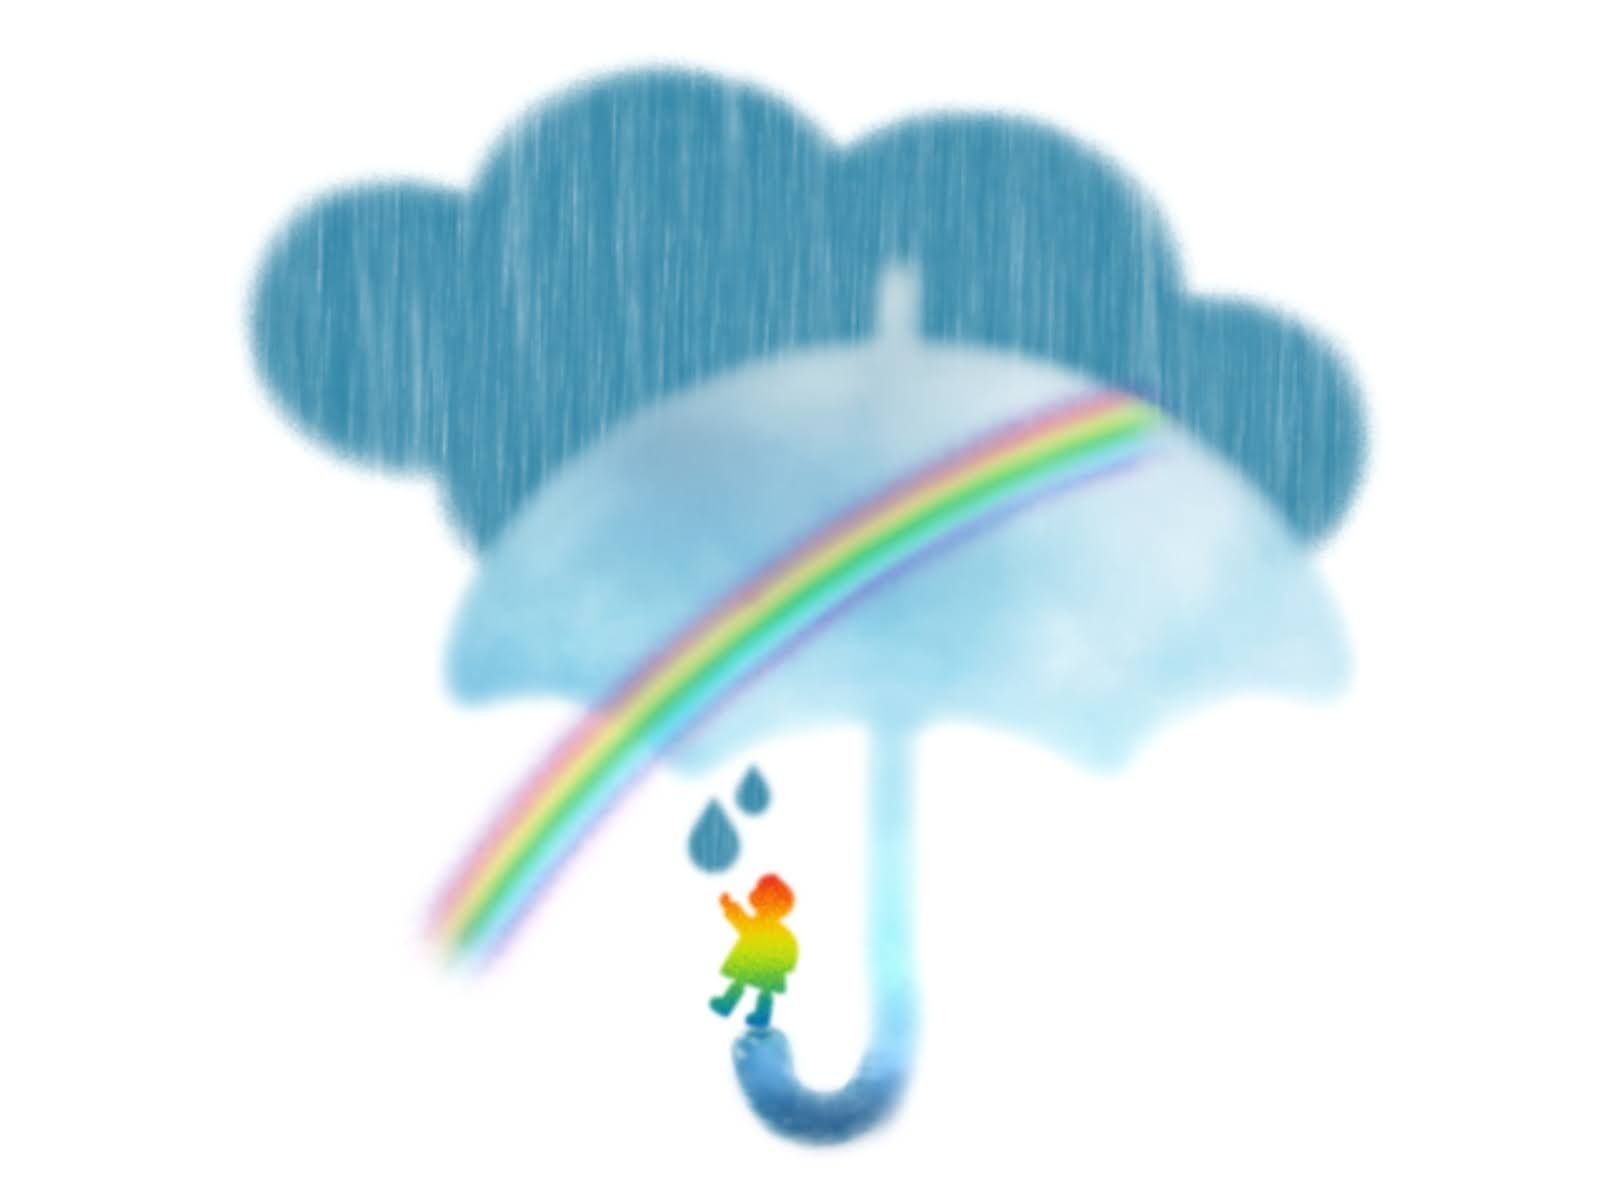 花みずき Al Twitter イラストac 天体観測 月夜と飛行船 幻想的なイラスト 雨と虹のイラスト Dlありがとうございます たくさん使っていただけたら嬉しいです T Co Zibppuuapu T Co Zz05kjtmpt Twitter